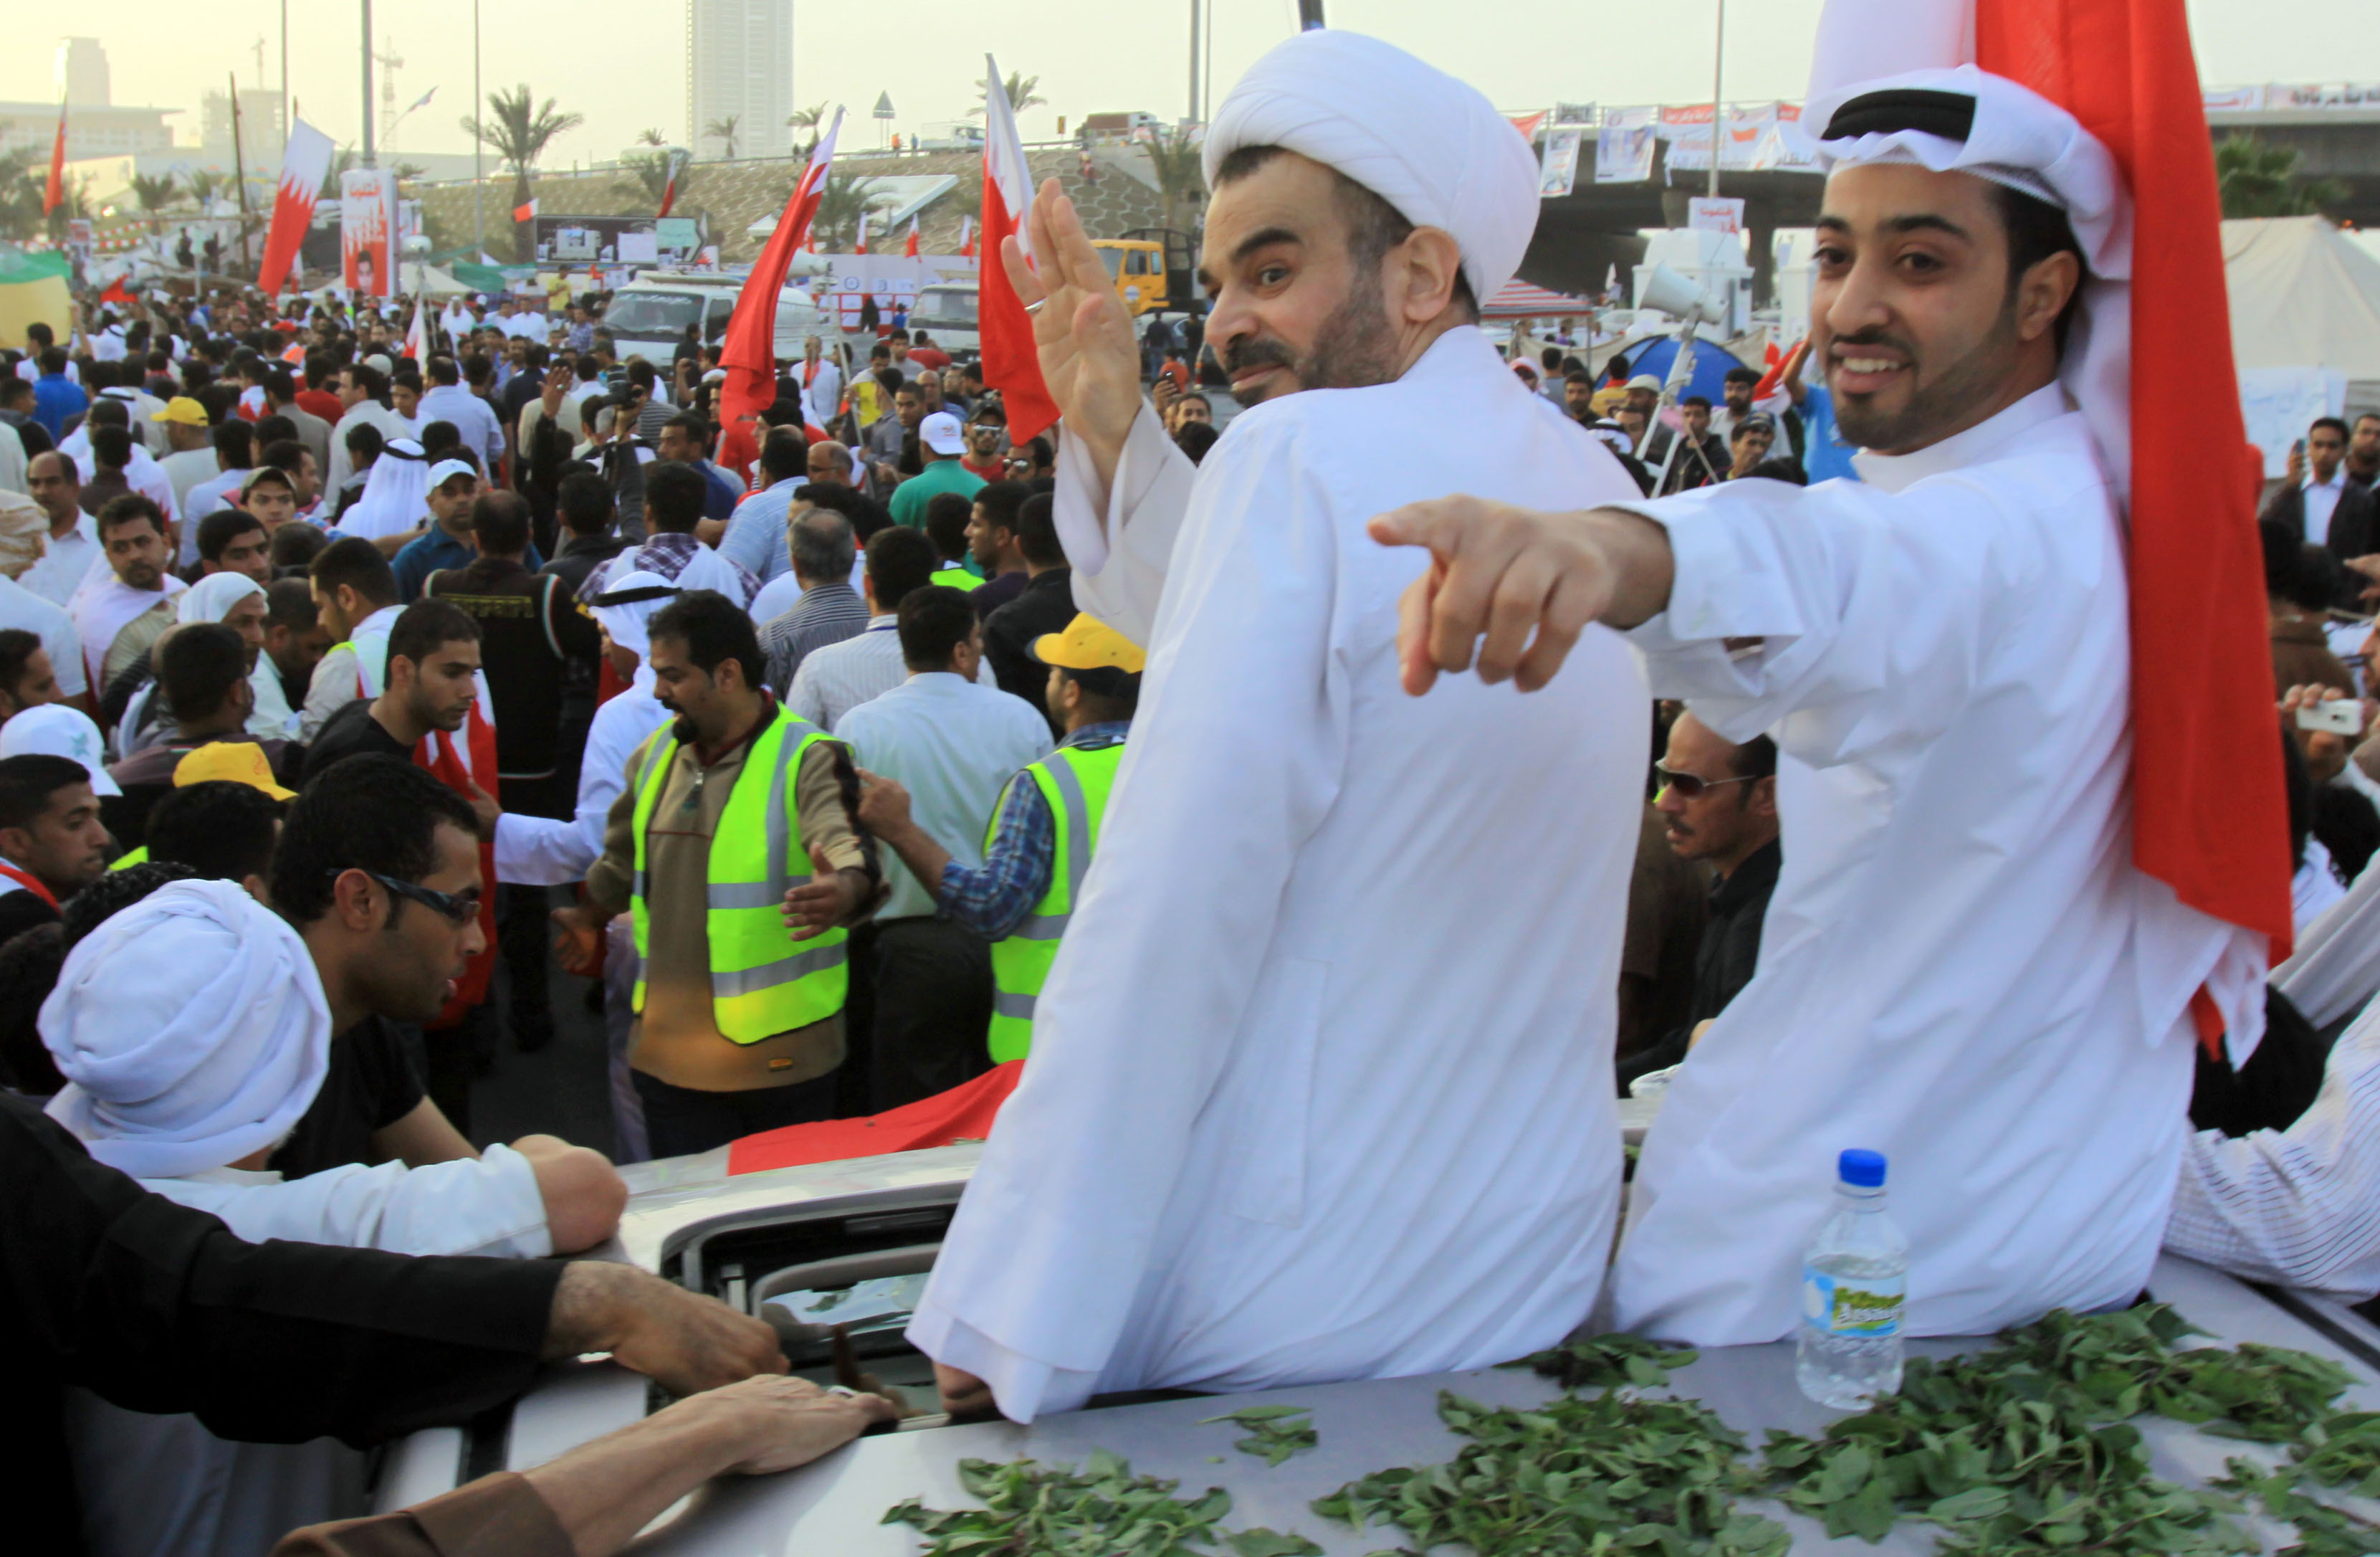 Mänskliga rättigheter, Tortyr, Fängelse, Bahrain, Kungafamiljen, Mohammed Habib Al-Muqdad, Protester